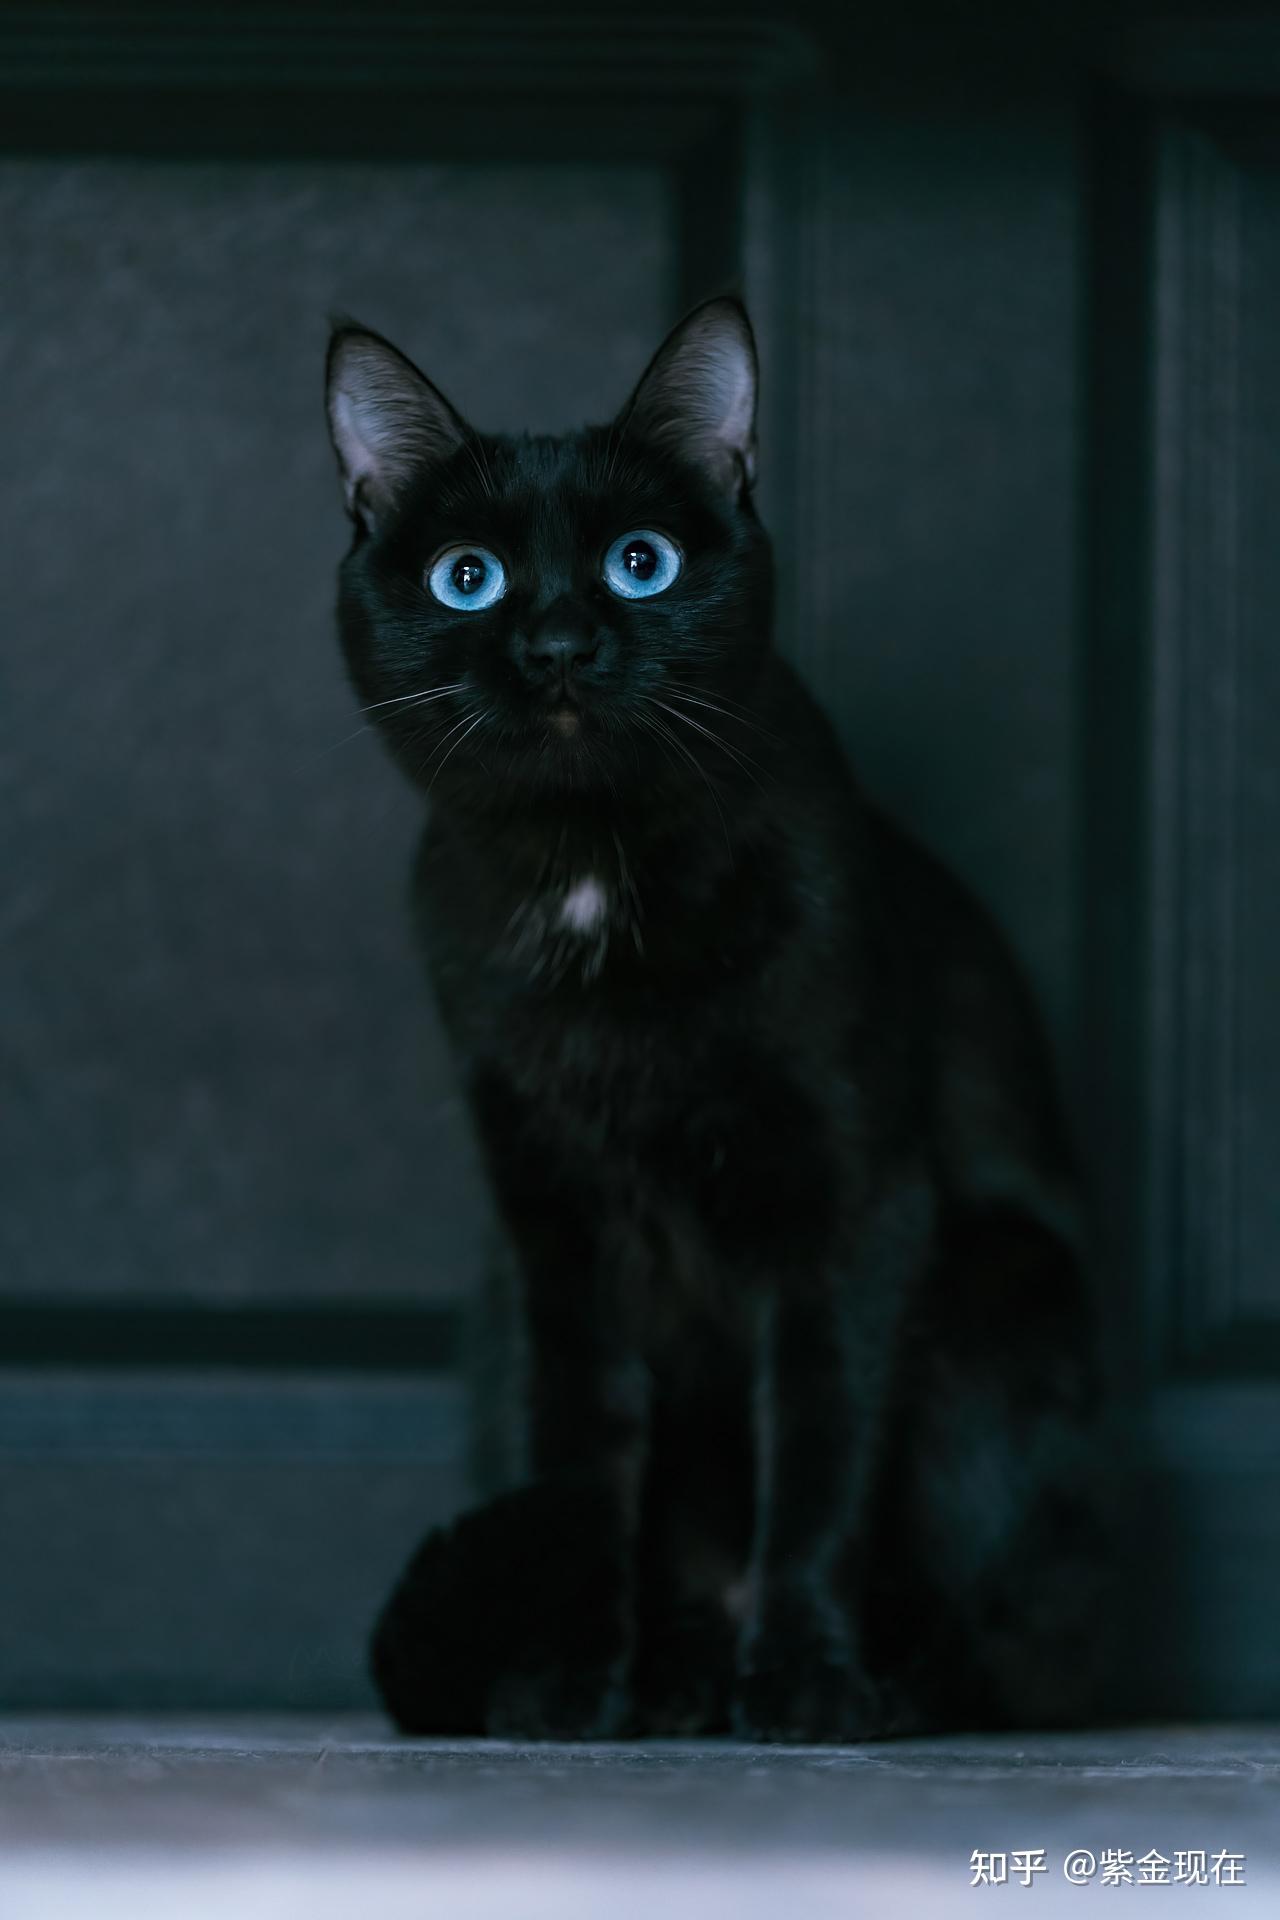 黑猫的照片图片大全图片